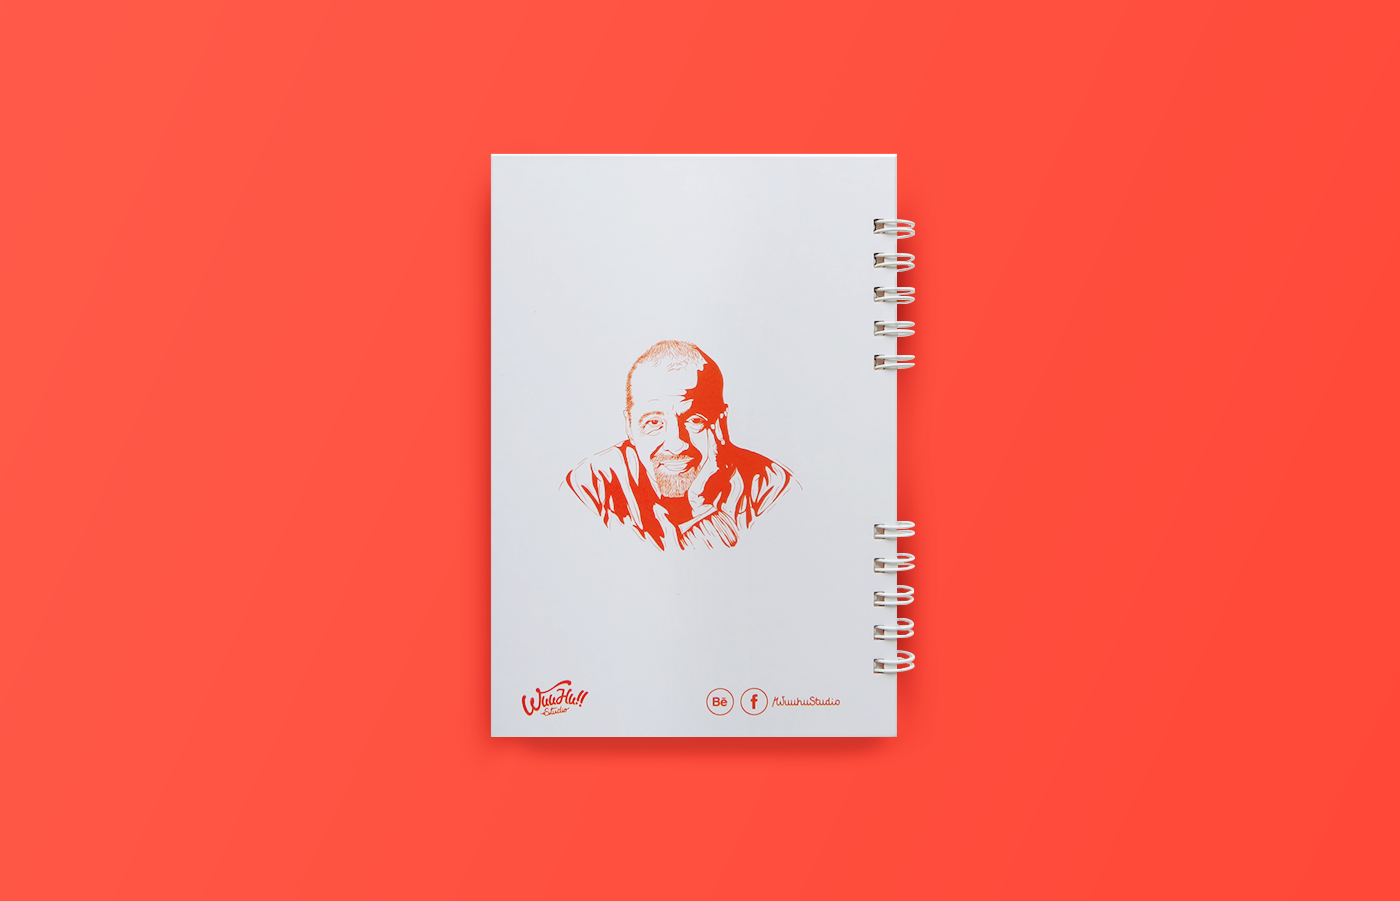 lettering notebook Cuaderno poster anaranjado pualo coelho frase Motivación serigrafia color